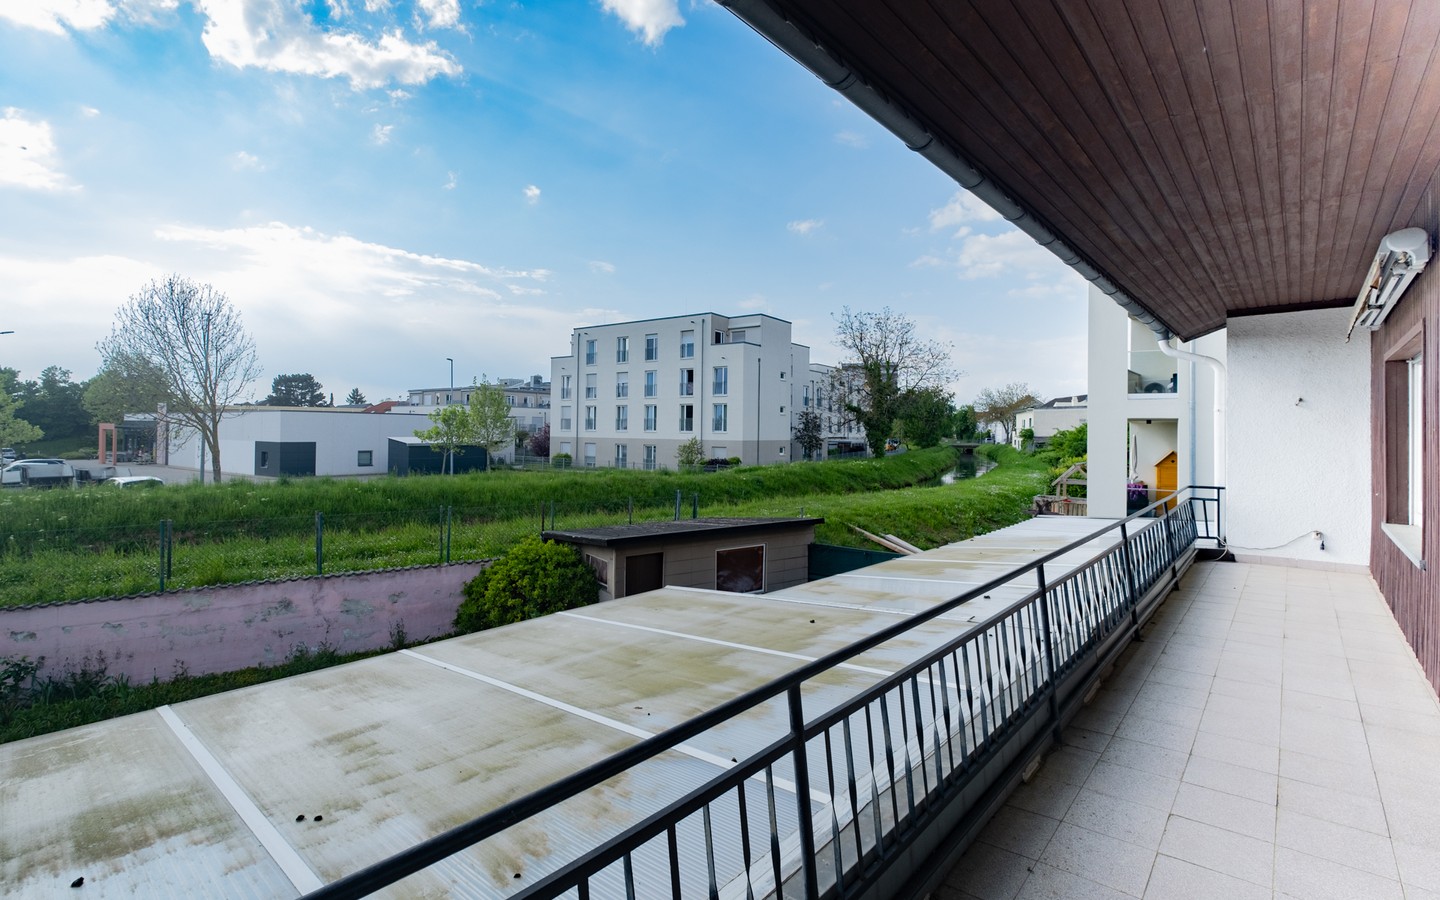 Aussicht vom Balkon - Leimen: freistehendes Haus in Splitlevelbauweise, mit 2 Garagen, 2 Stellplätzen und Garten